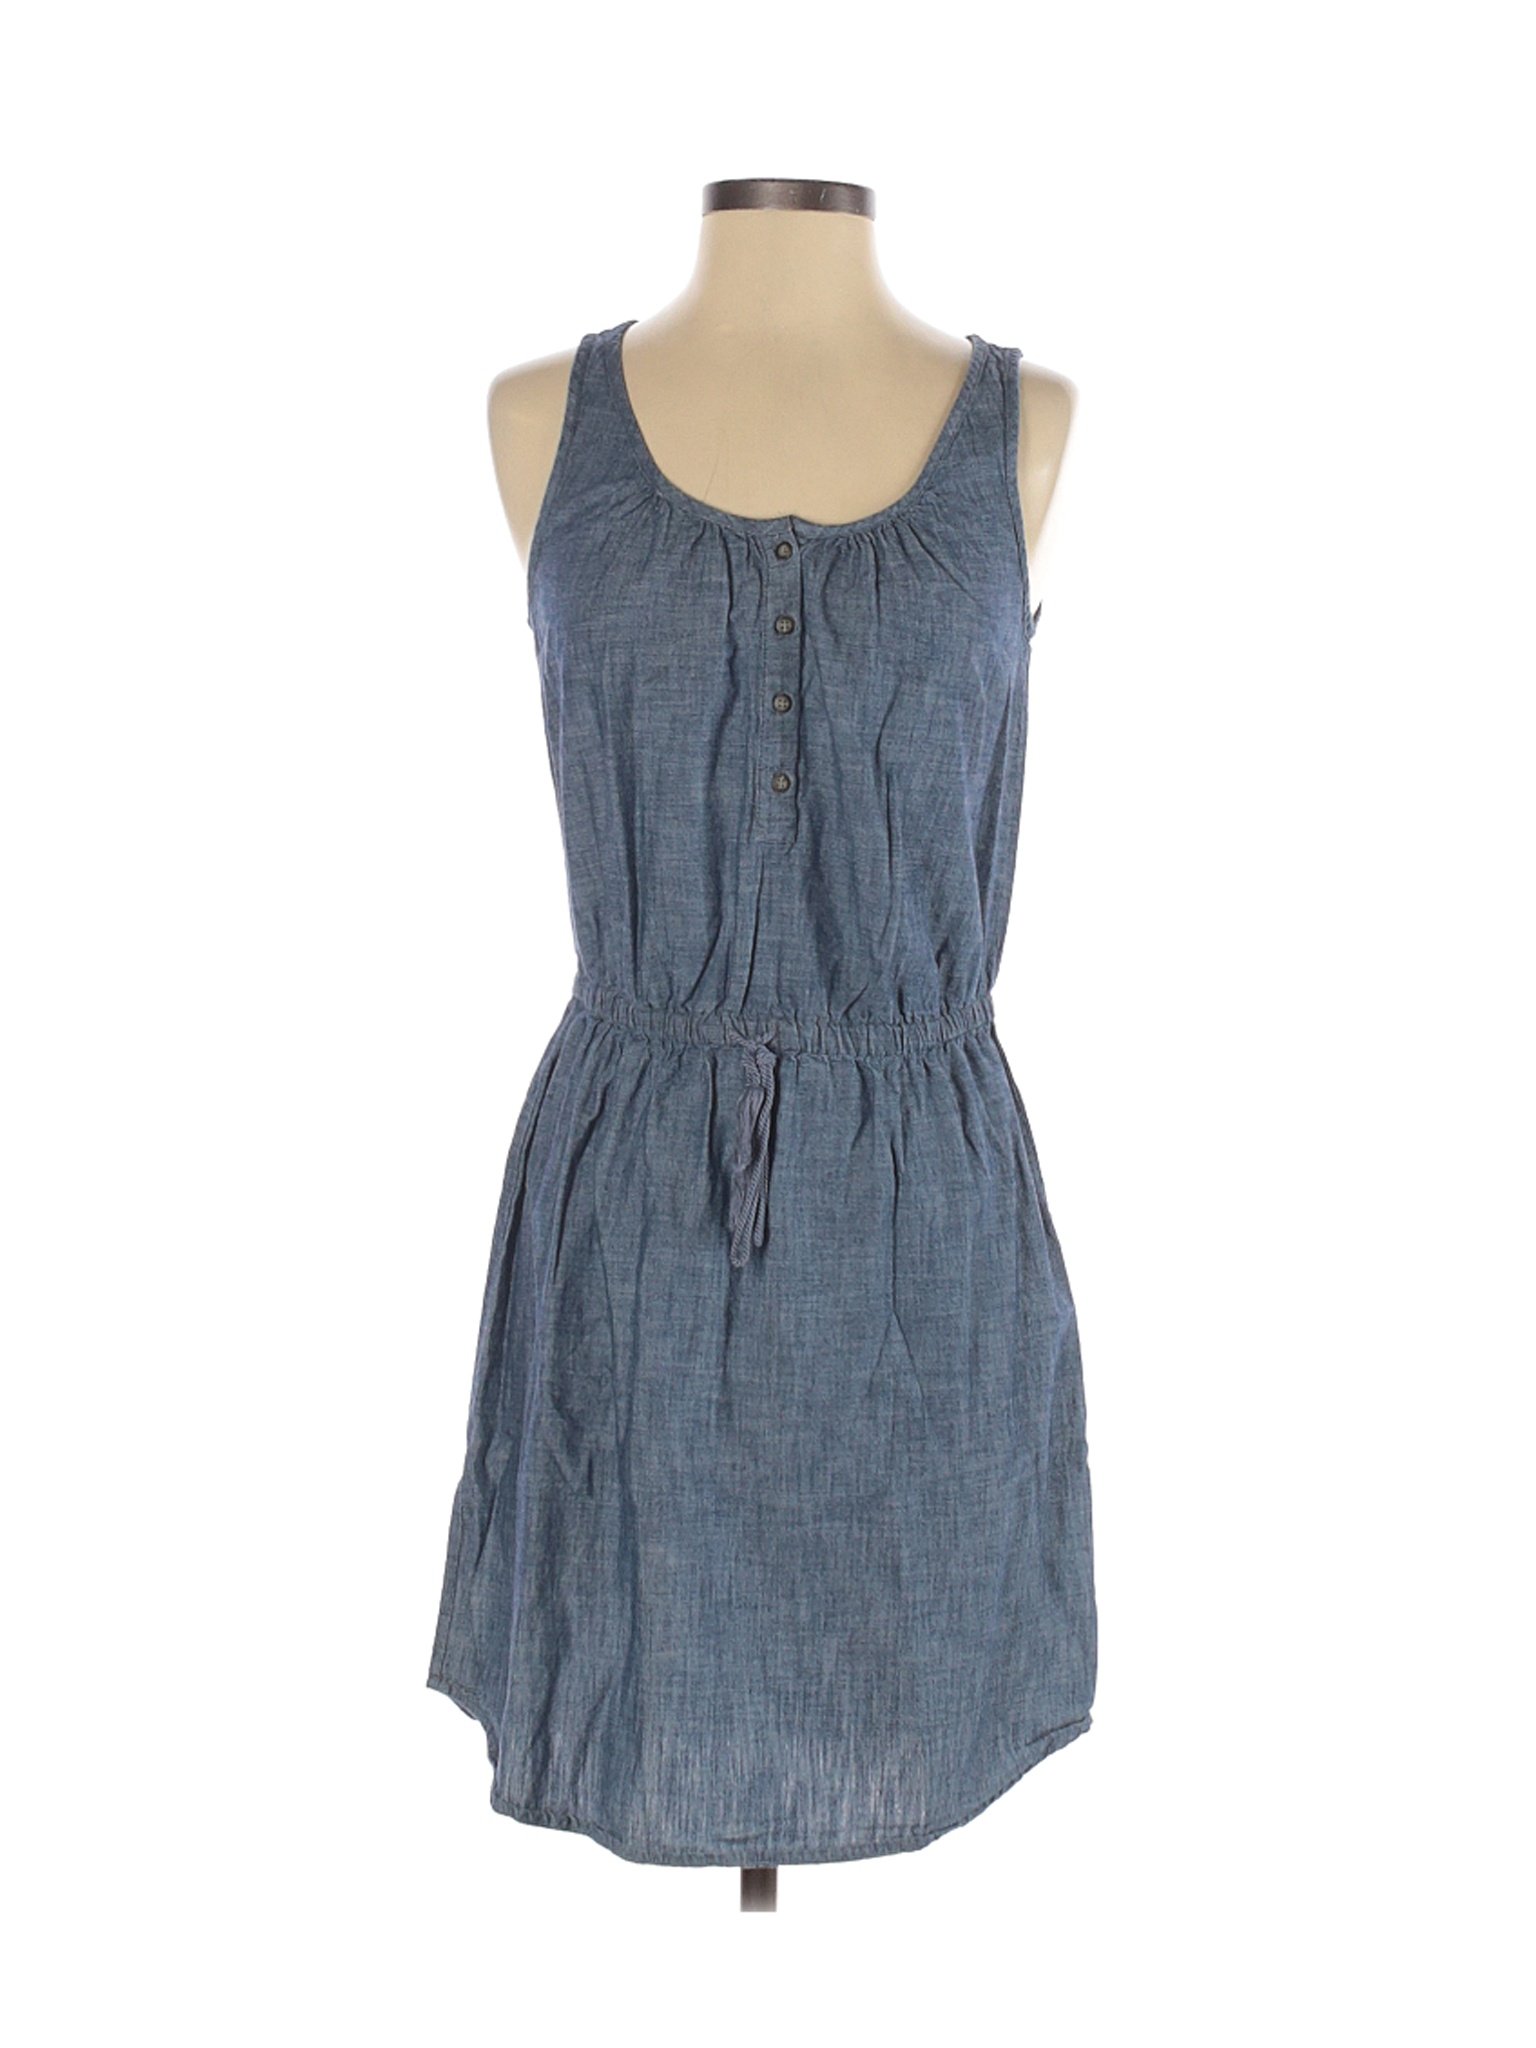 Gap Outlet Women Blue Casual Dress XS | eBay